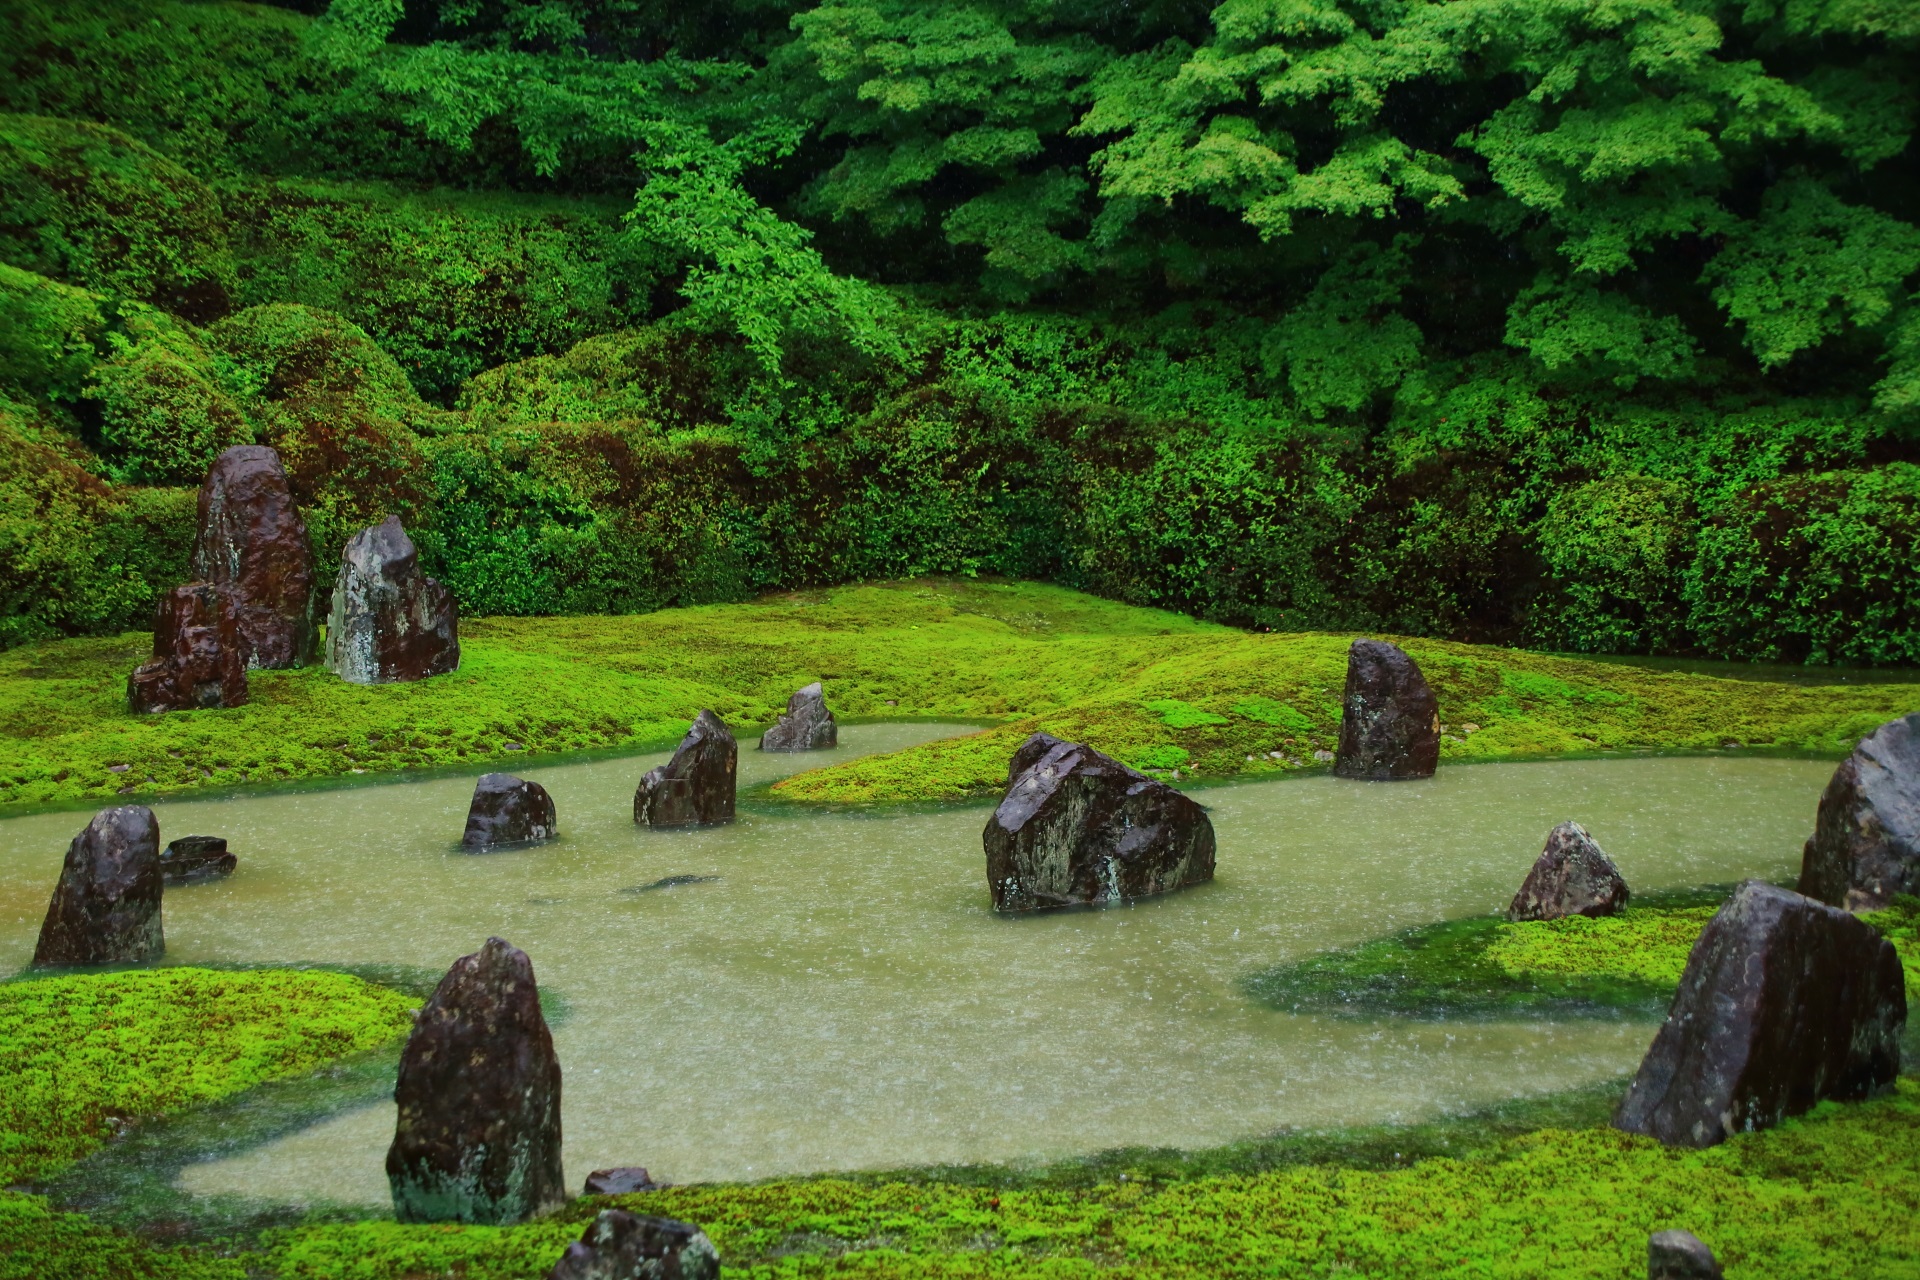 昭和の名作庭家である重森三玲によって作られた枯山水庭園の東福寺塔頭光明院の波心庭